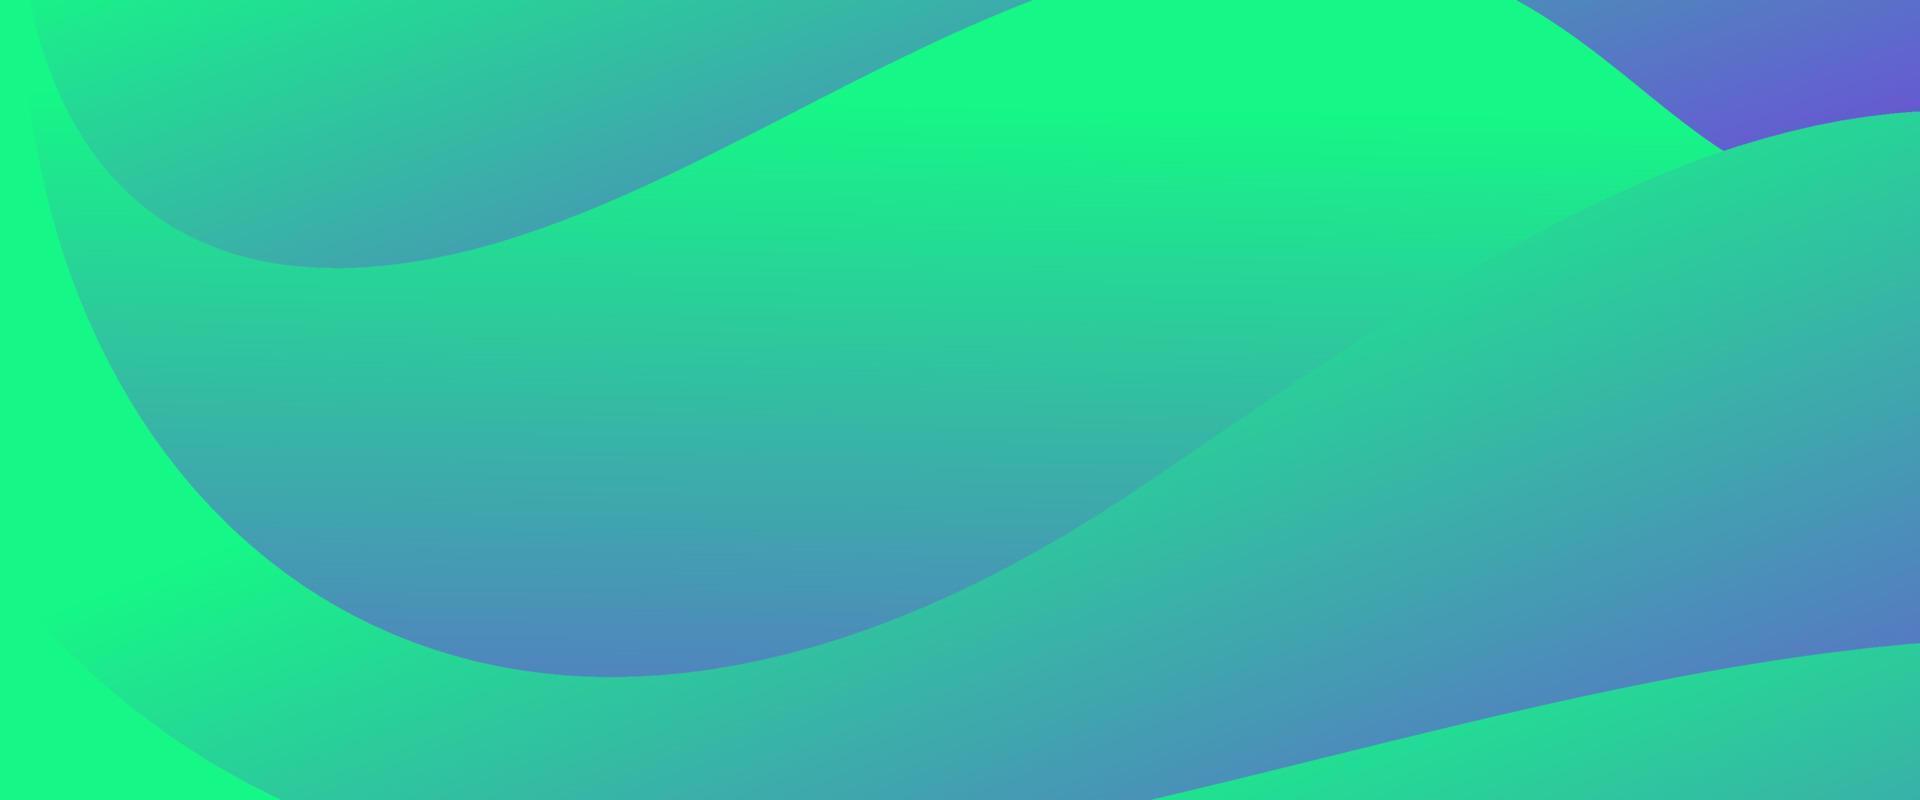 abstrakt vätska Vinka på lutning grön och blå bakgrund vektor